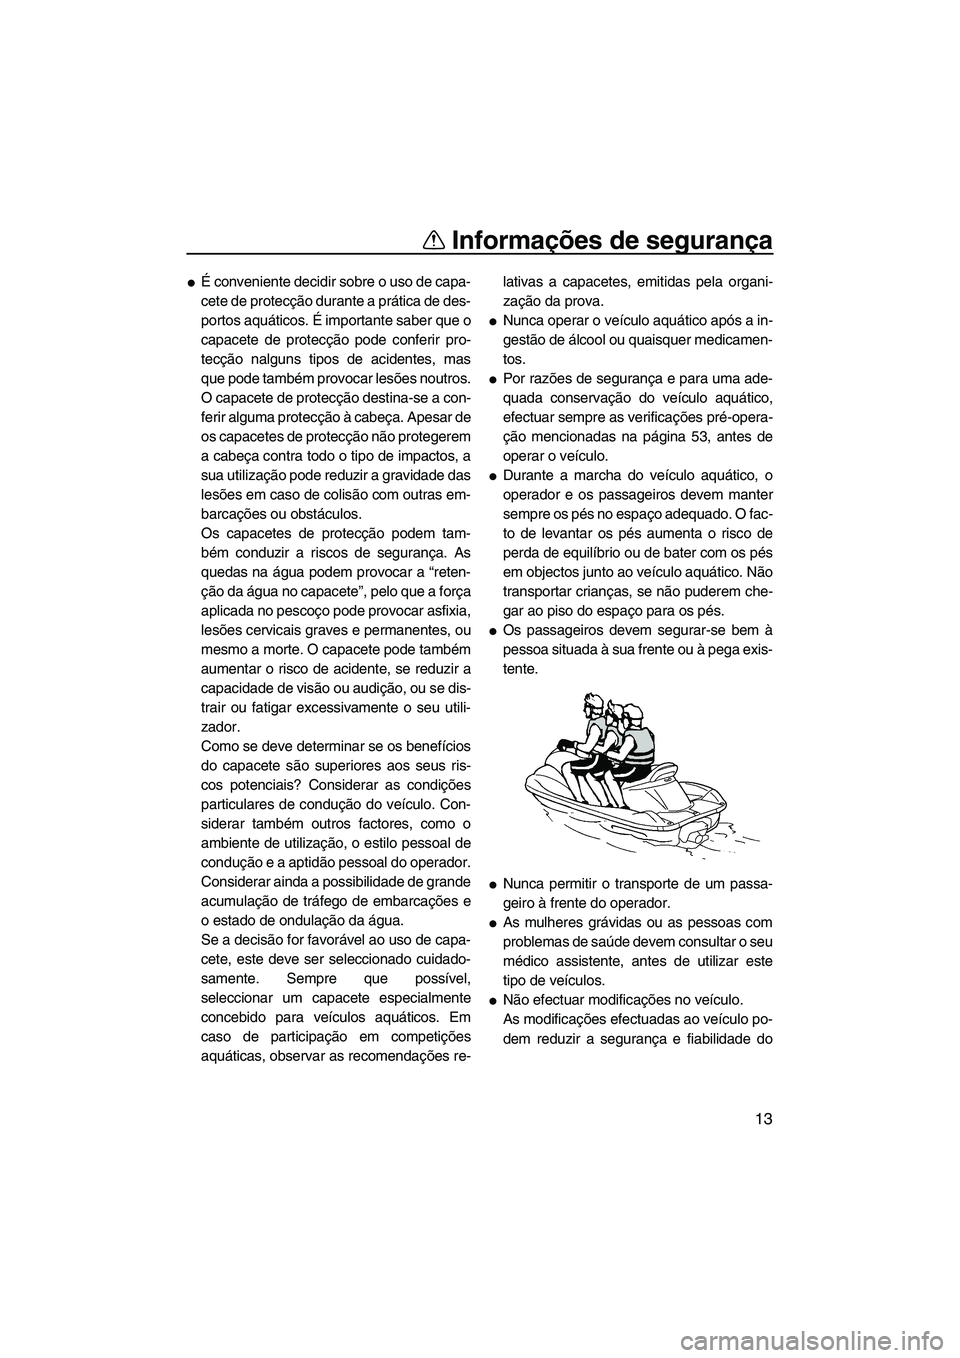 YAMAHA VXS 2012  Manual de utilização (in Portuguese) Informações de segurança
13
É conveniente decidir sobre o uso de capa-
cete de protecção durante a prática de des-
portos aquáticos. É importante saber que o
capacete de protecção pode con